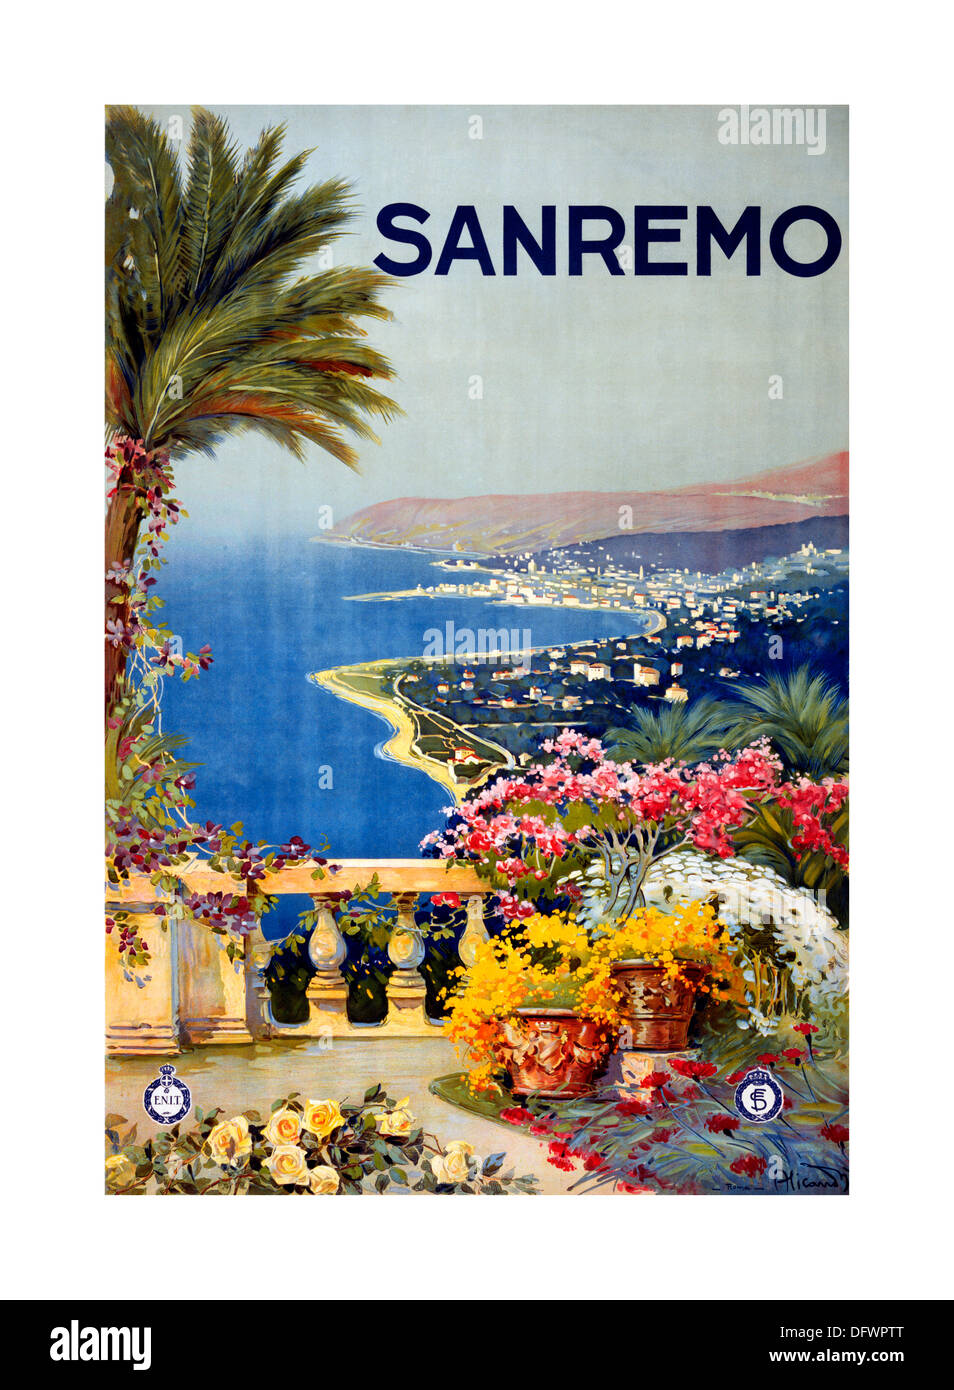 SAN REMO Sanremo cartel de viaje vintage con terraza de palmeras y vista a la costa de principios de 1920 Italia Foto de stock